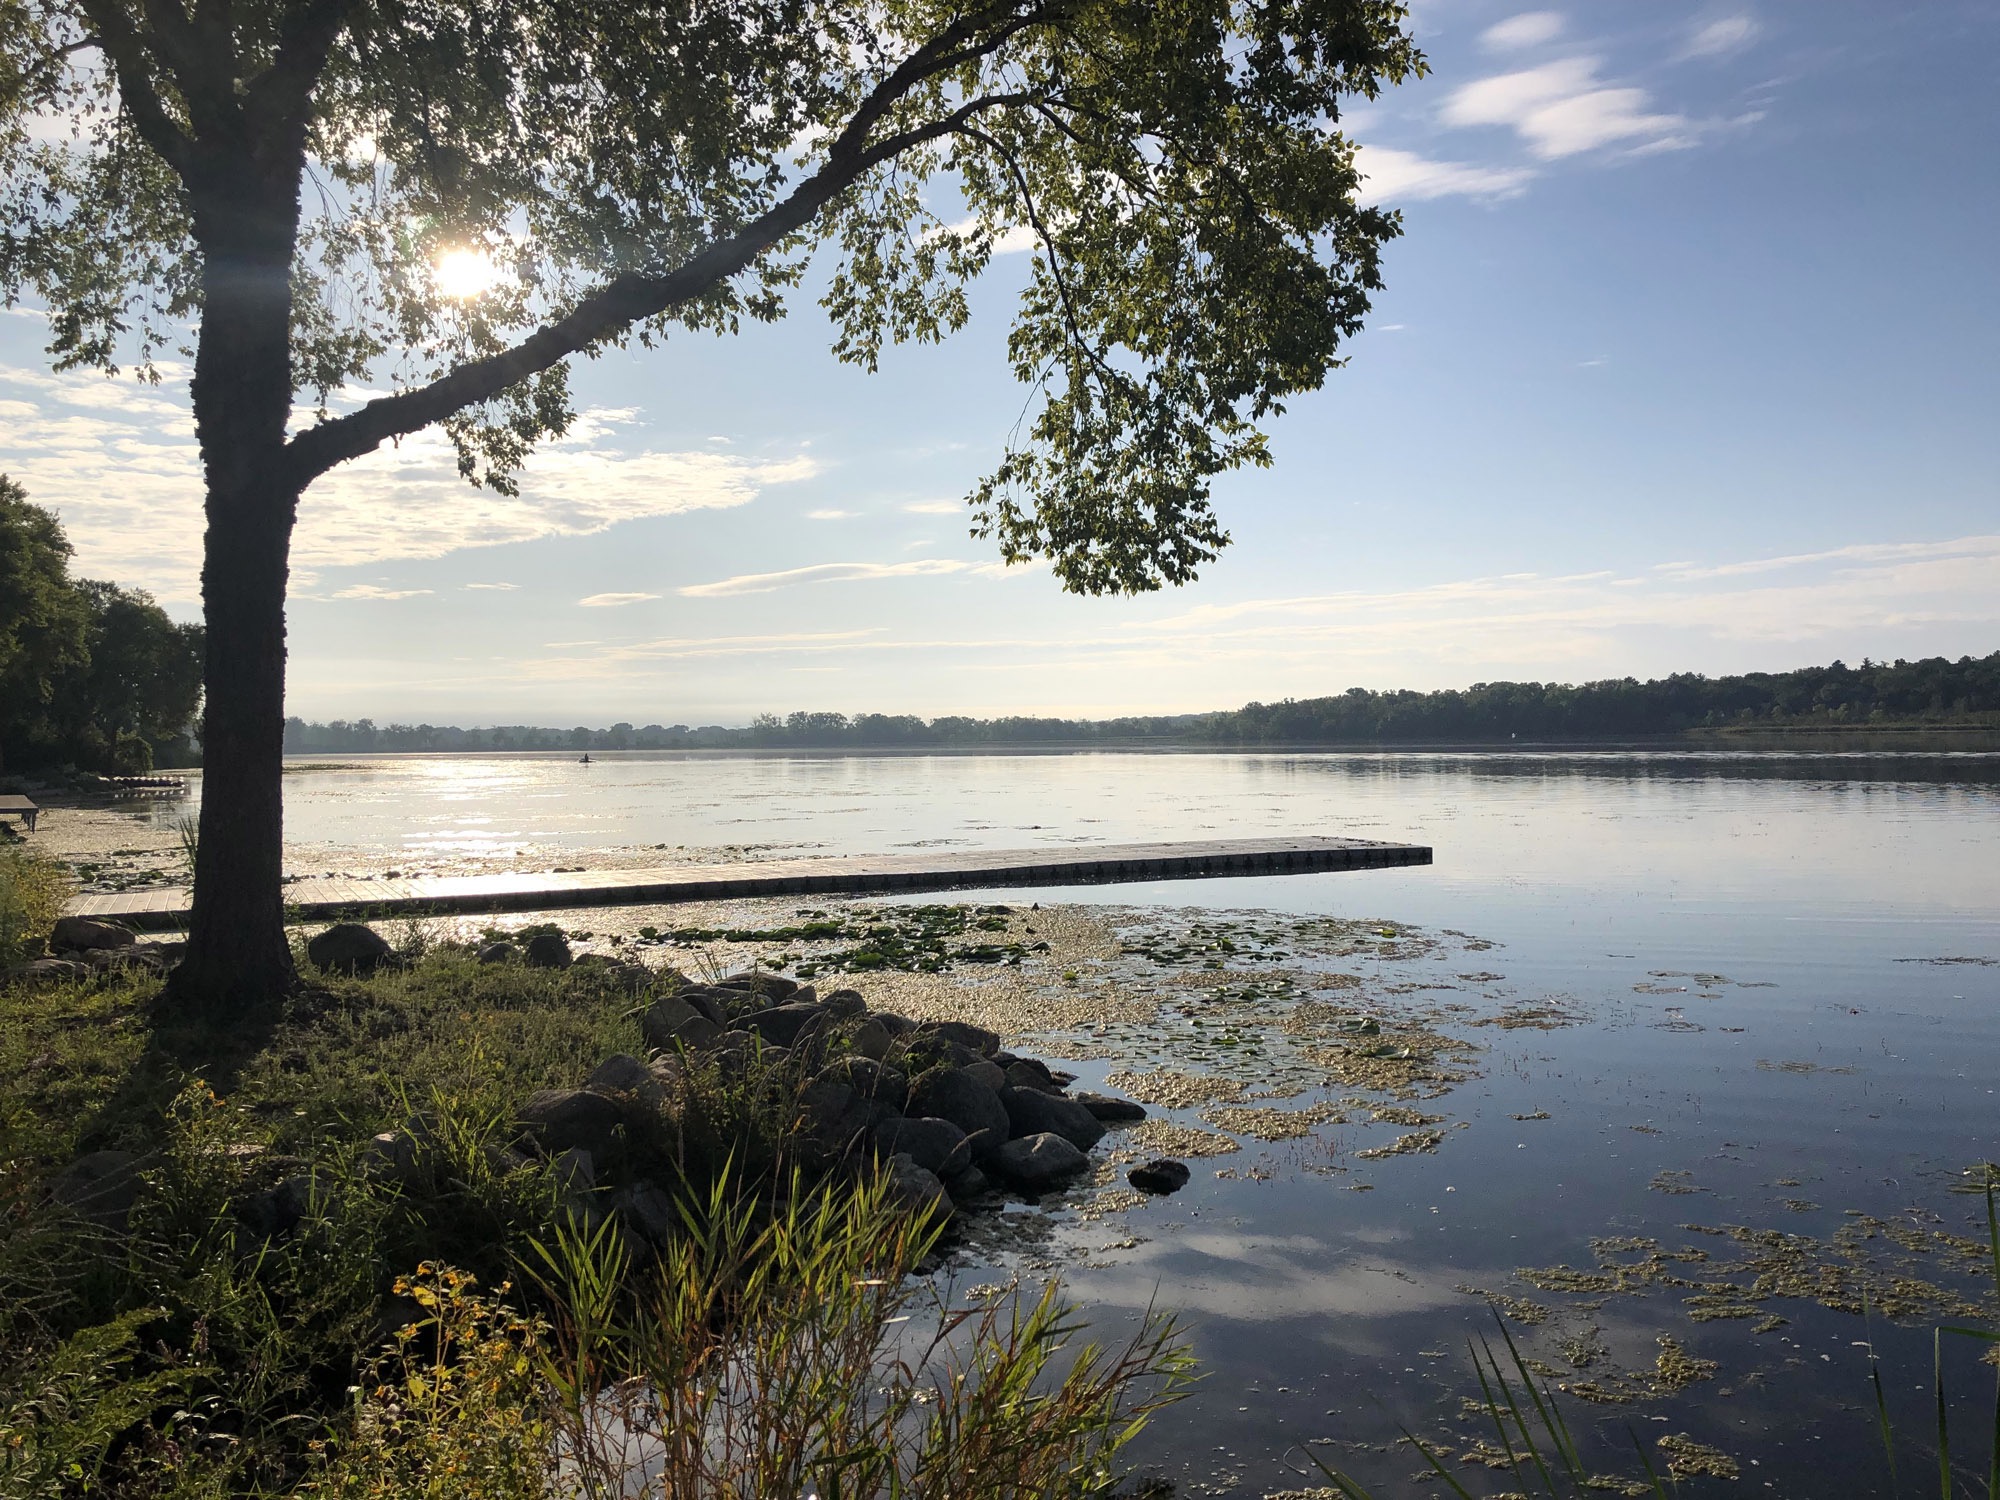 Lake Wingra on September 1, 2019.